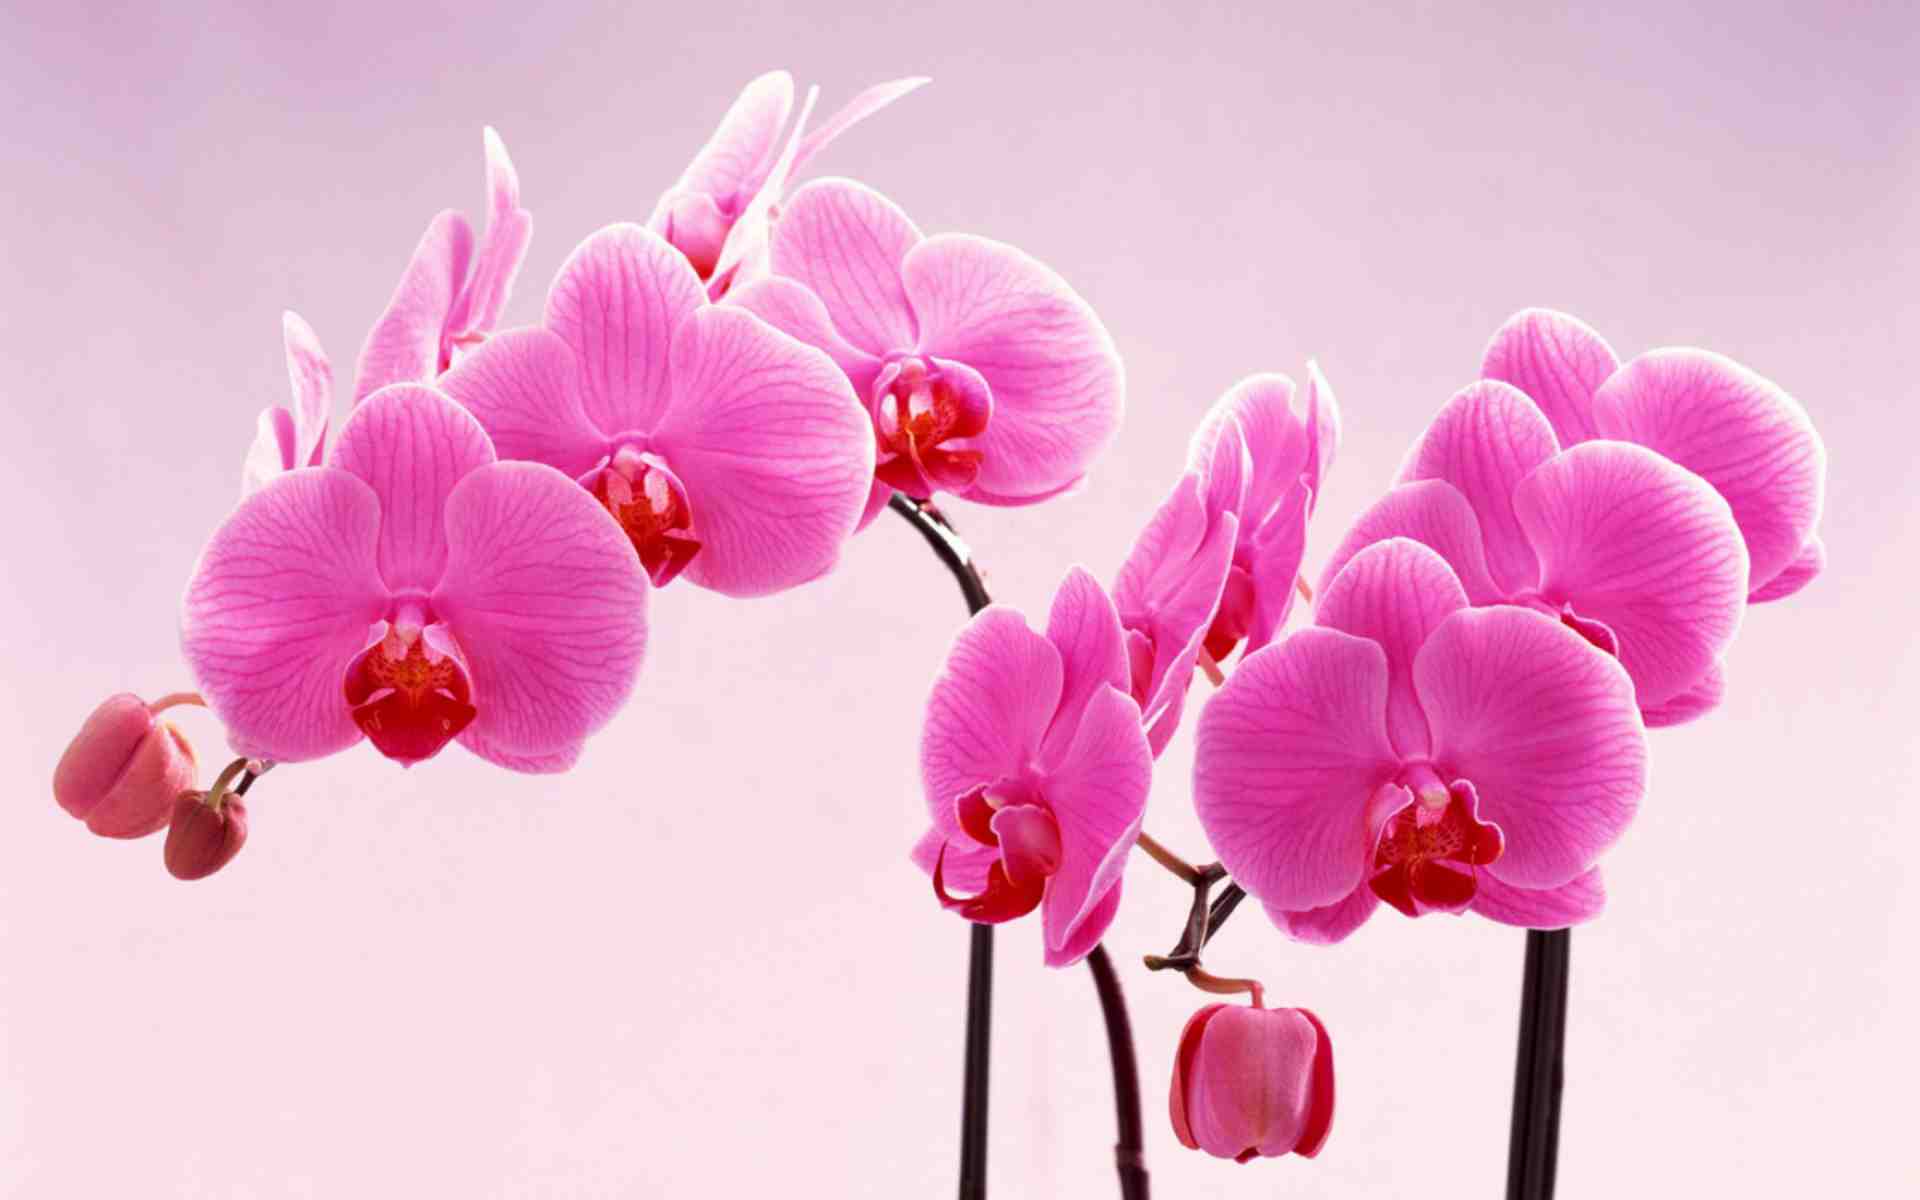 Hình nền hoa phong lan tươi sáng và quyến rũ trong lựa chọn màu sắc đa dạng sẽ mang lại một không gian làm việc, nghỉ ngơi cho bạn thoải mái và thoáng đãng. Hãy xem hình ảnh để cảm nhận sự yên bình mà hoa phong lan đem lại.